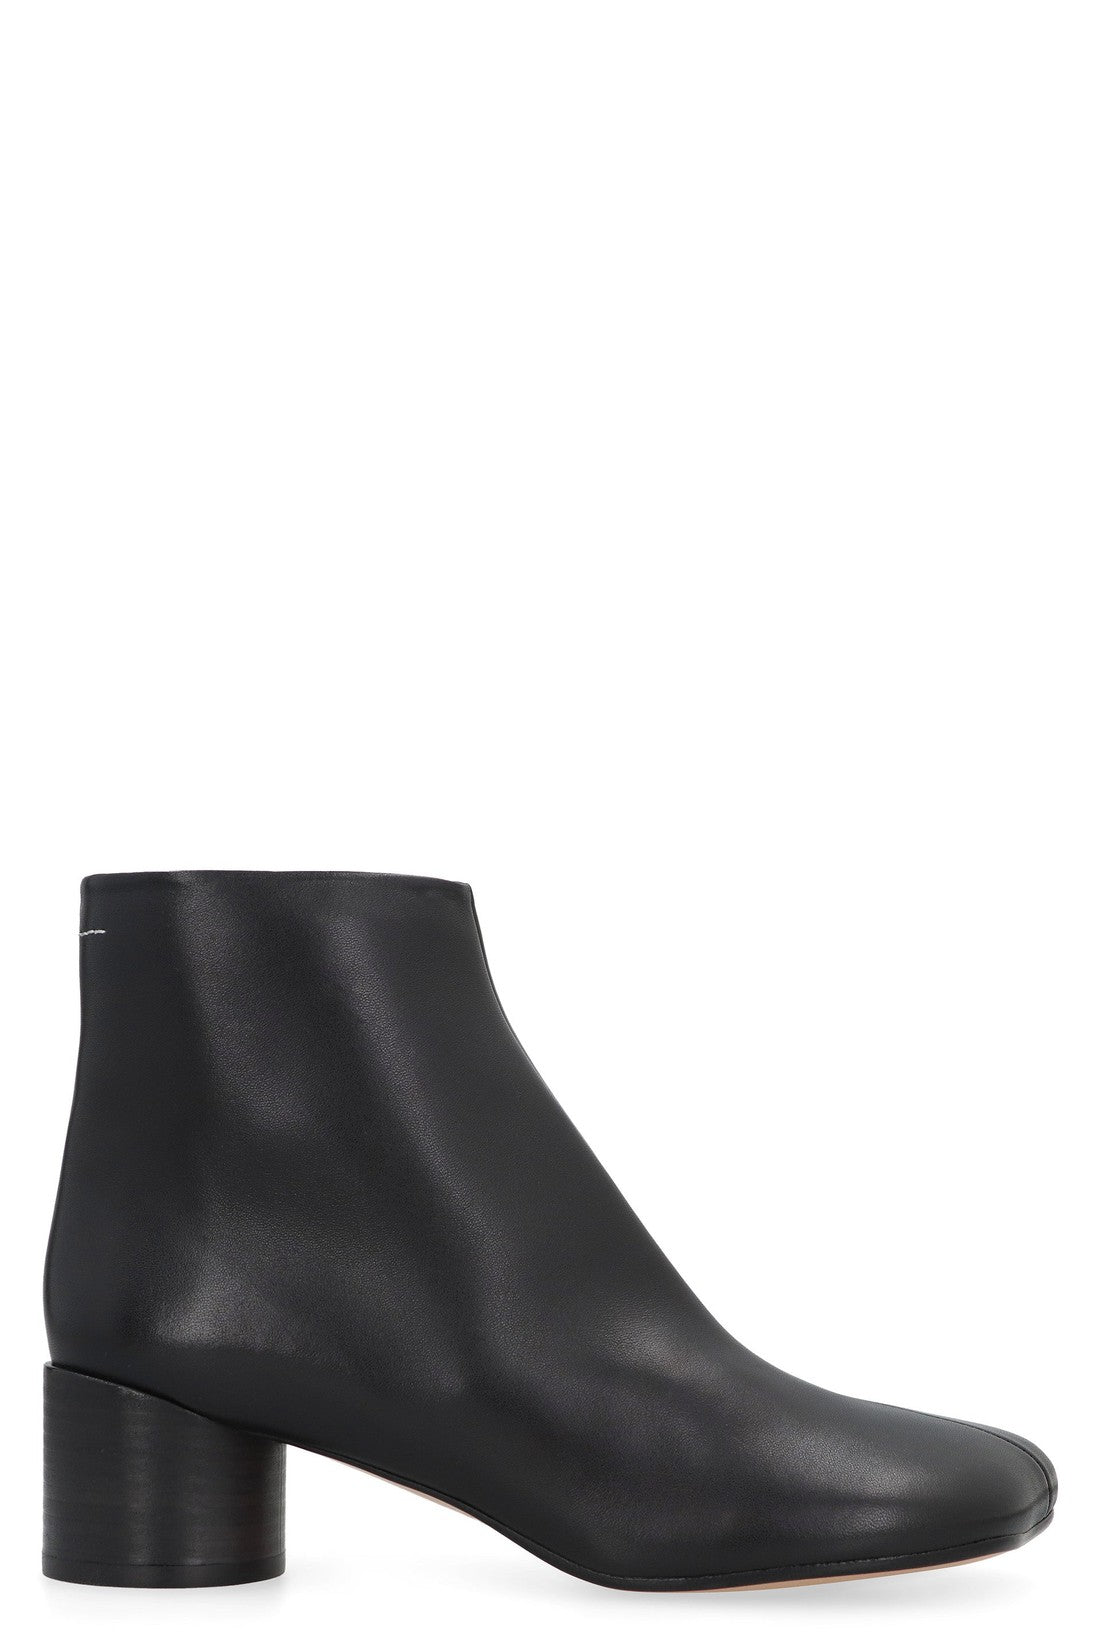 MM6 Maison Margiela-OUTLET-SALE-Anatomici Leather ankle boots-ARCHIVIST